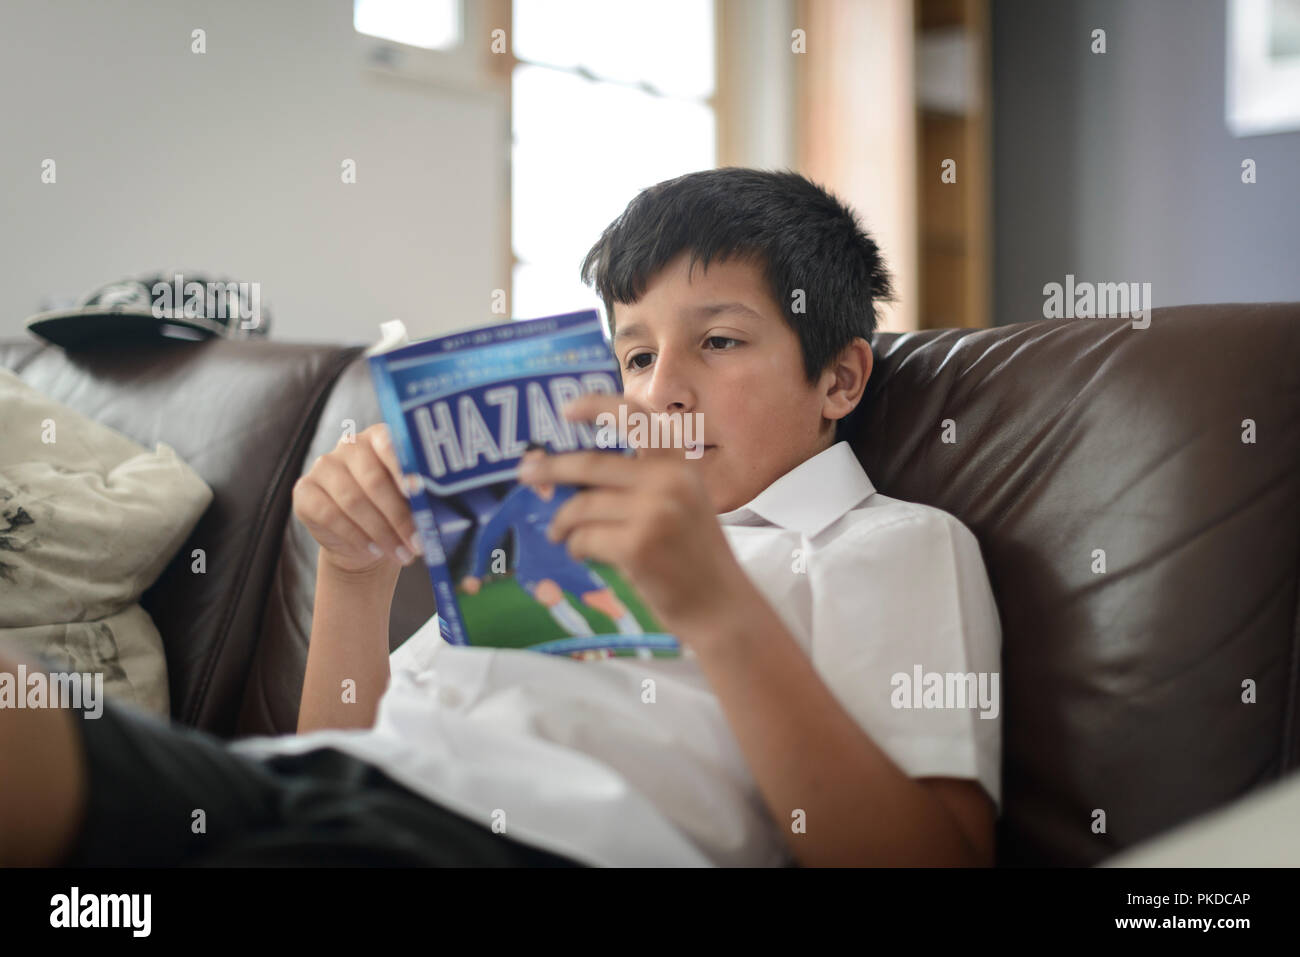 Surrey,UK-Giovane ragazzo in uniforme scolastica lettura calcio prenota at home Foto Stock